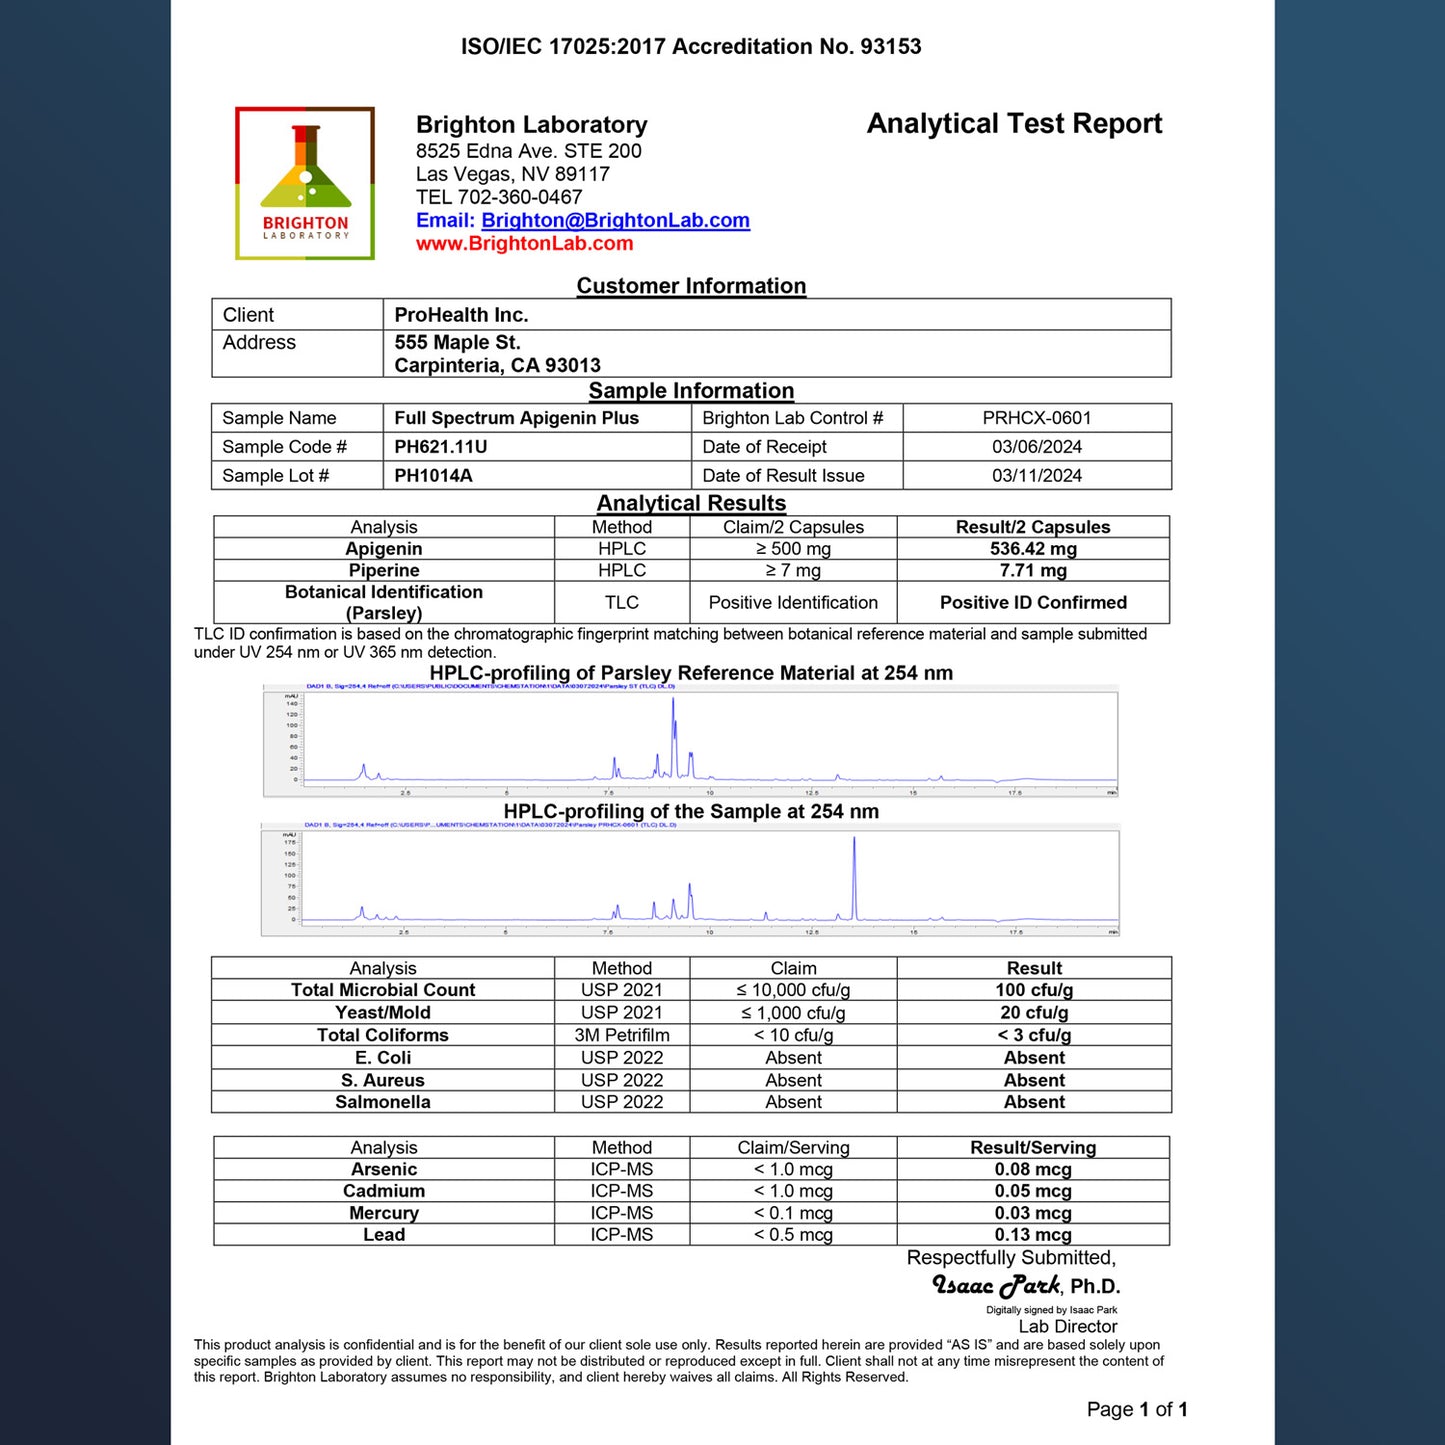 
                  
                    Full Spectrum Apigenin Plus Certificate of Analysis
                  
                